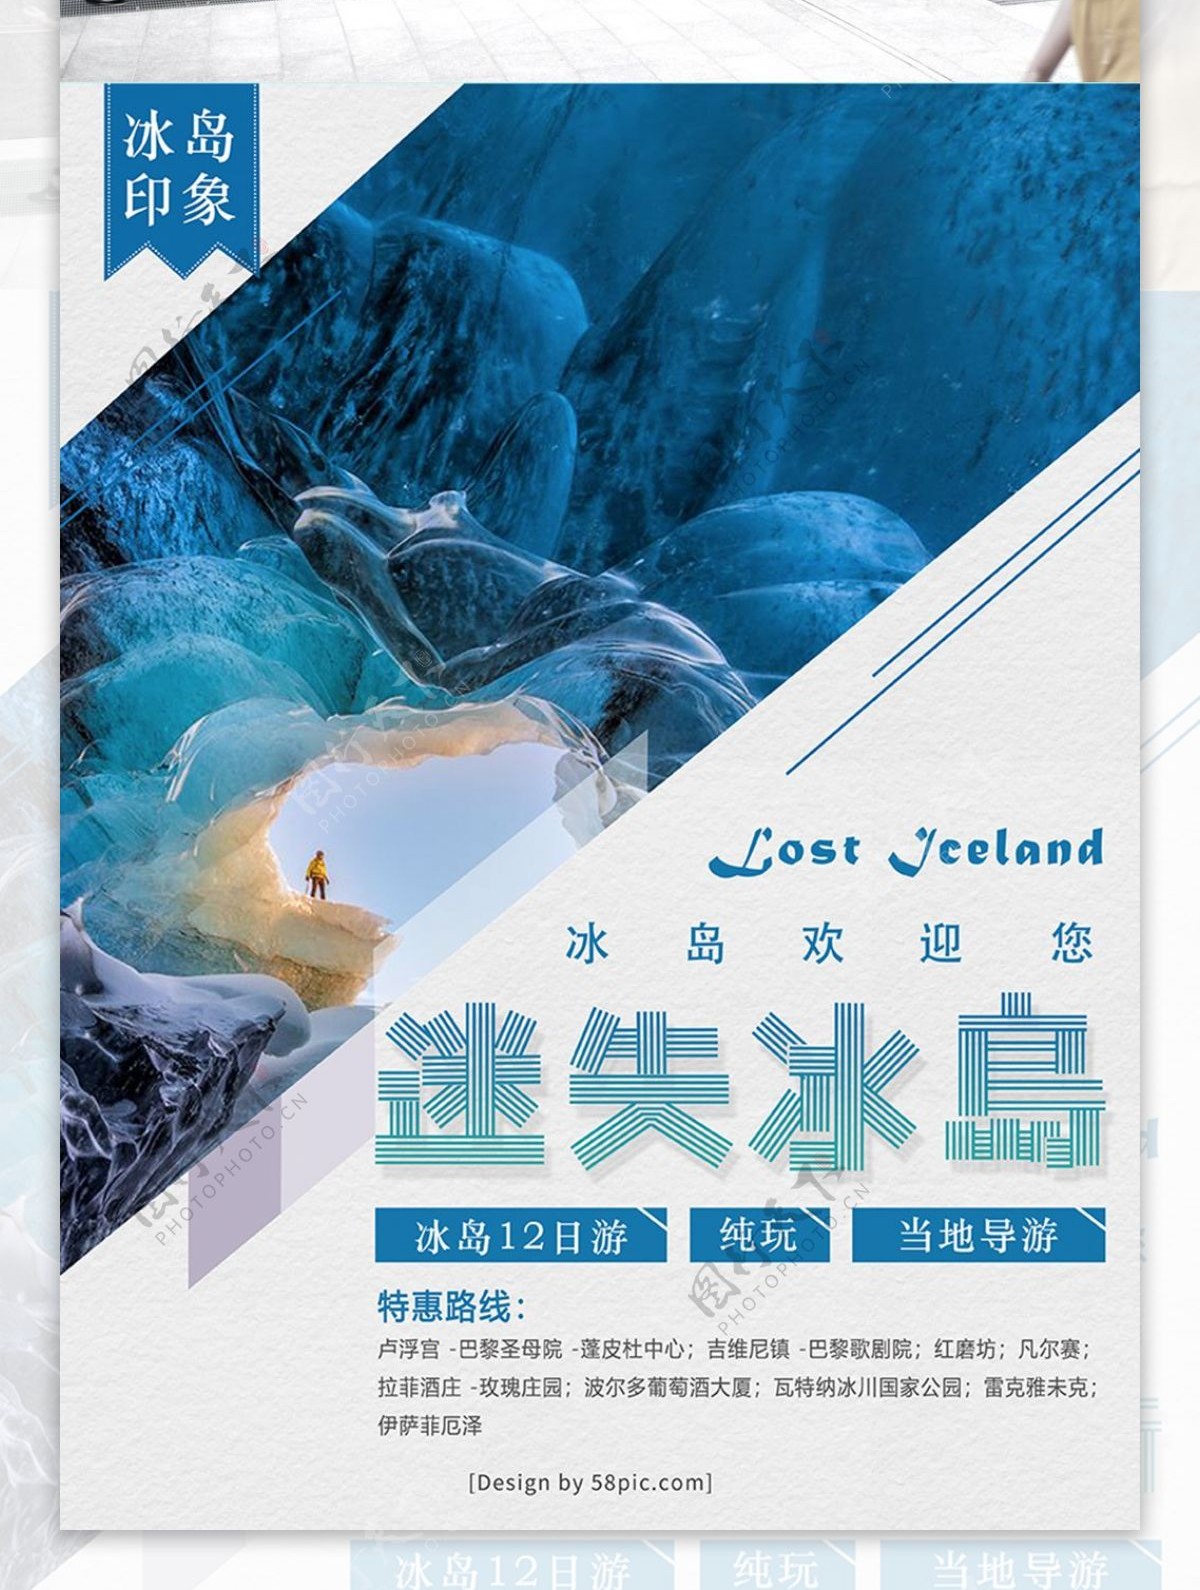 冰岛印象迷失冰岛蓝色系特惠路线海报